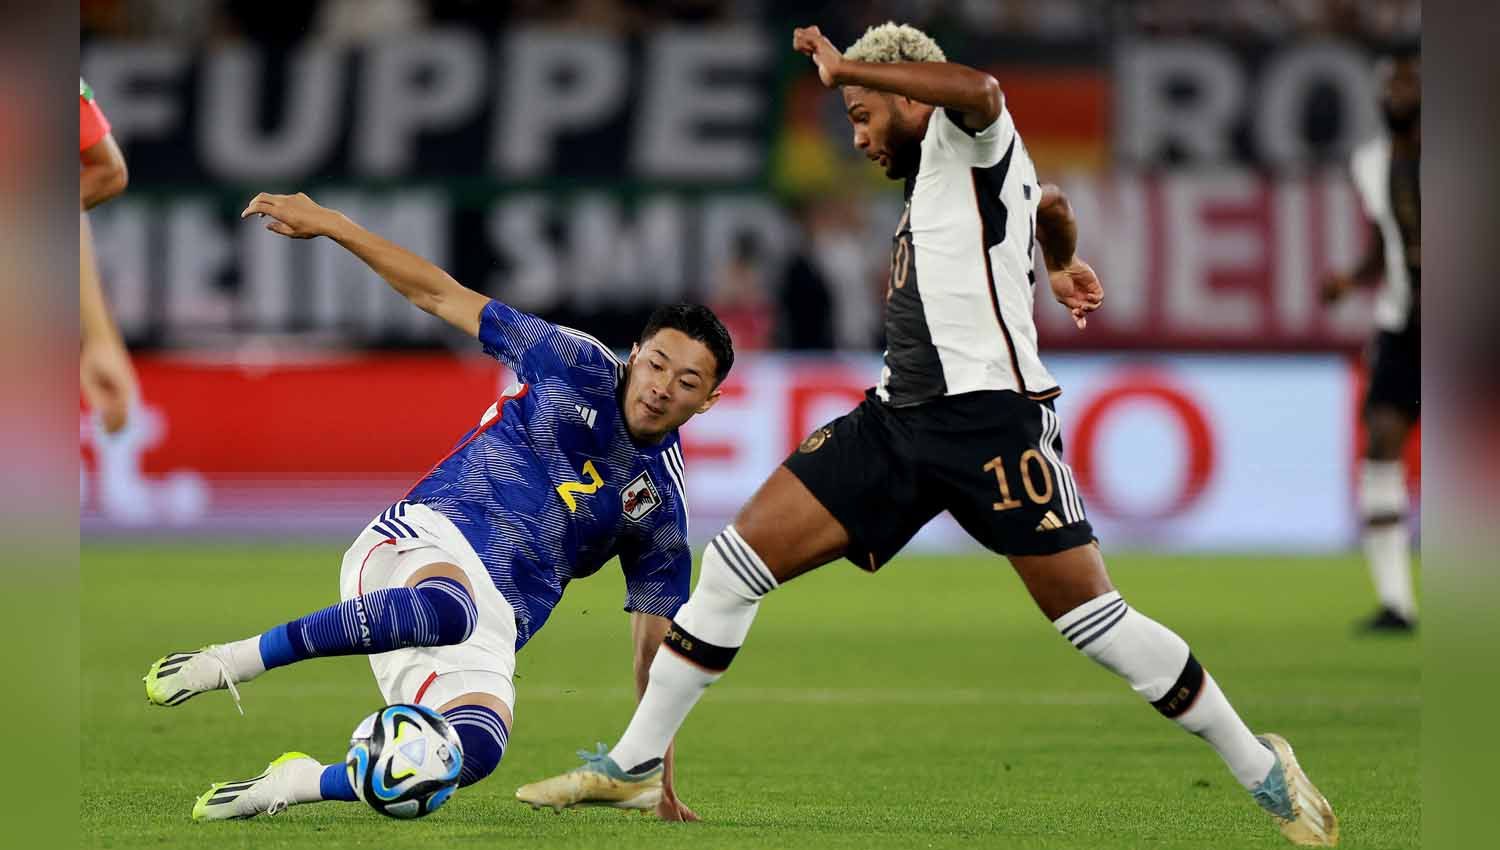 Pemain Jepang Yukinari Sugawara lakukan sleding kepada pemain Jerman Serge Gnabry pada laga Persahabatan. (Foto: REUTERS/Lisi Niesner) Copyright: © REUTERS/Lisi Niesner